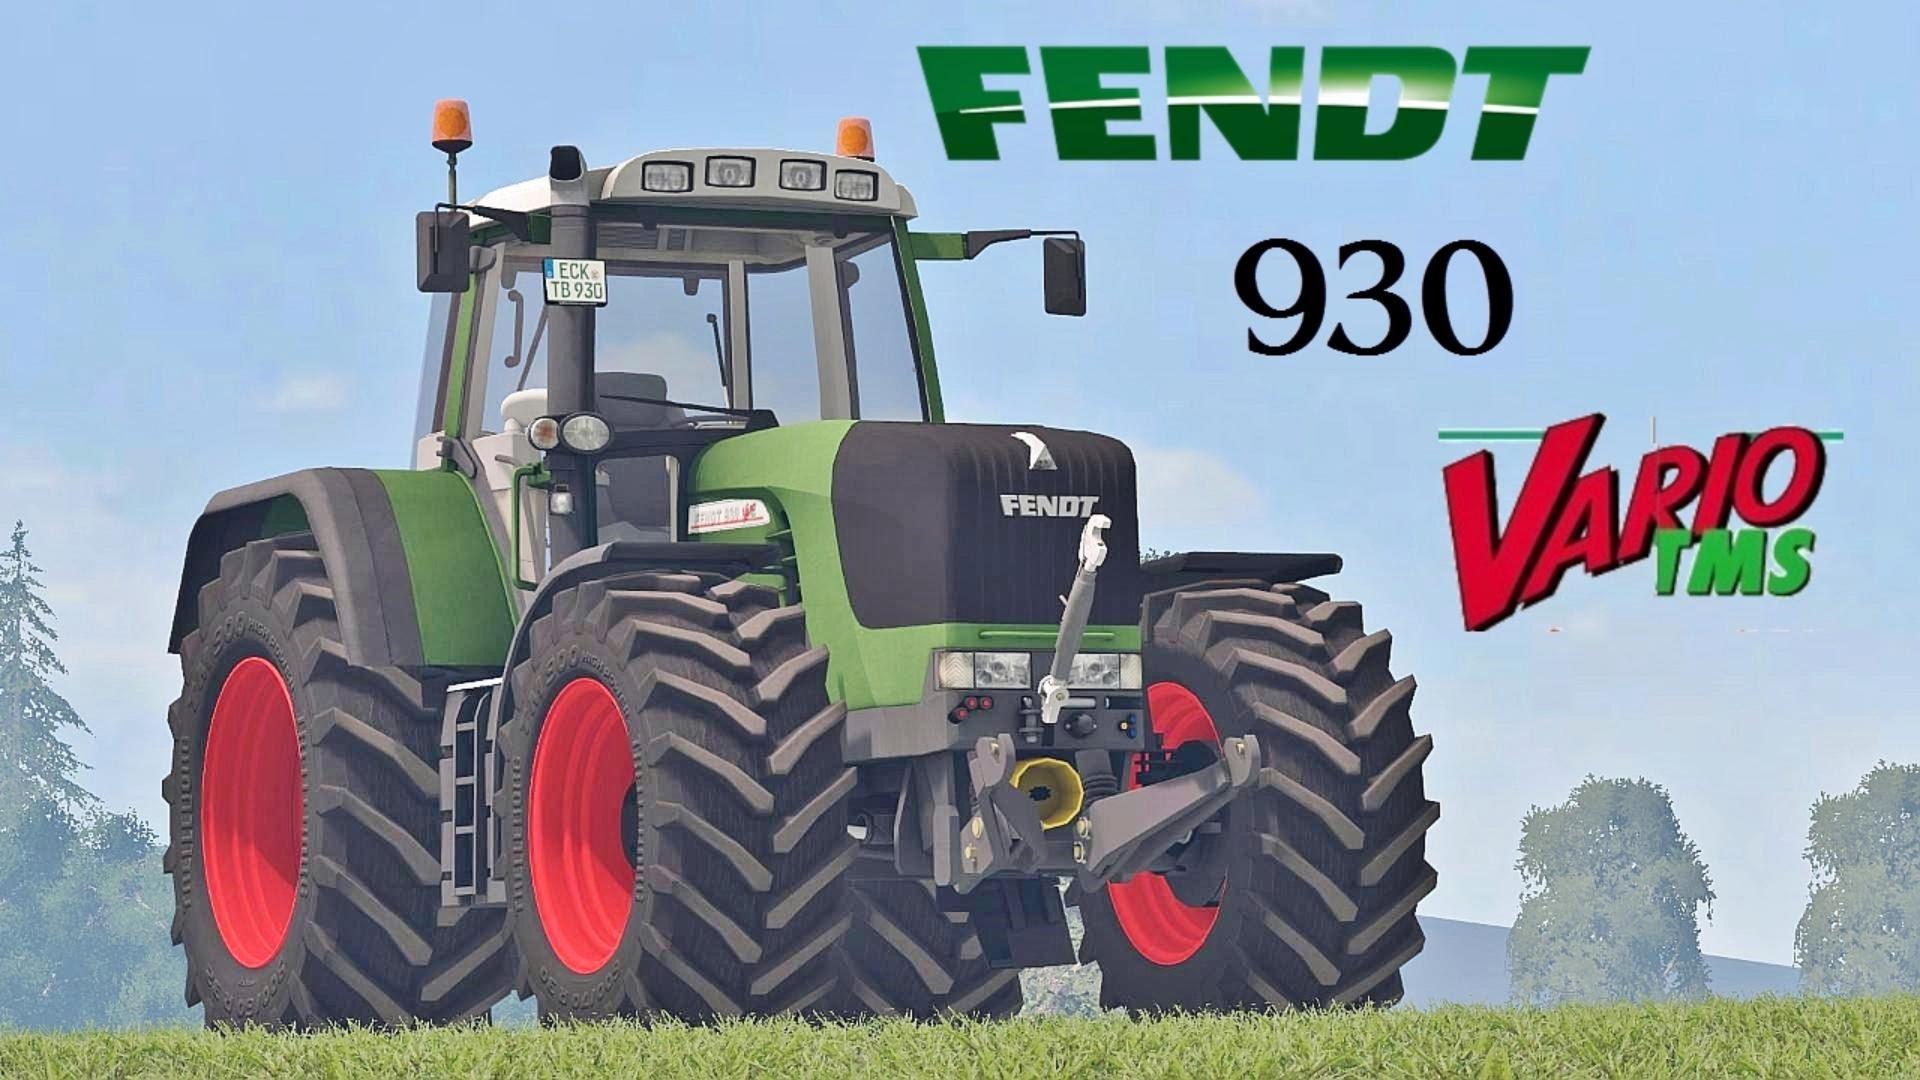 Fendt 930 Vario Tms V10 • Farming Simulator 19 17 15 Mods Fs19 17 15 Mods 6745